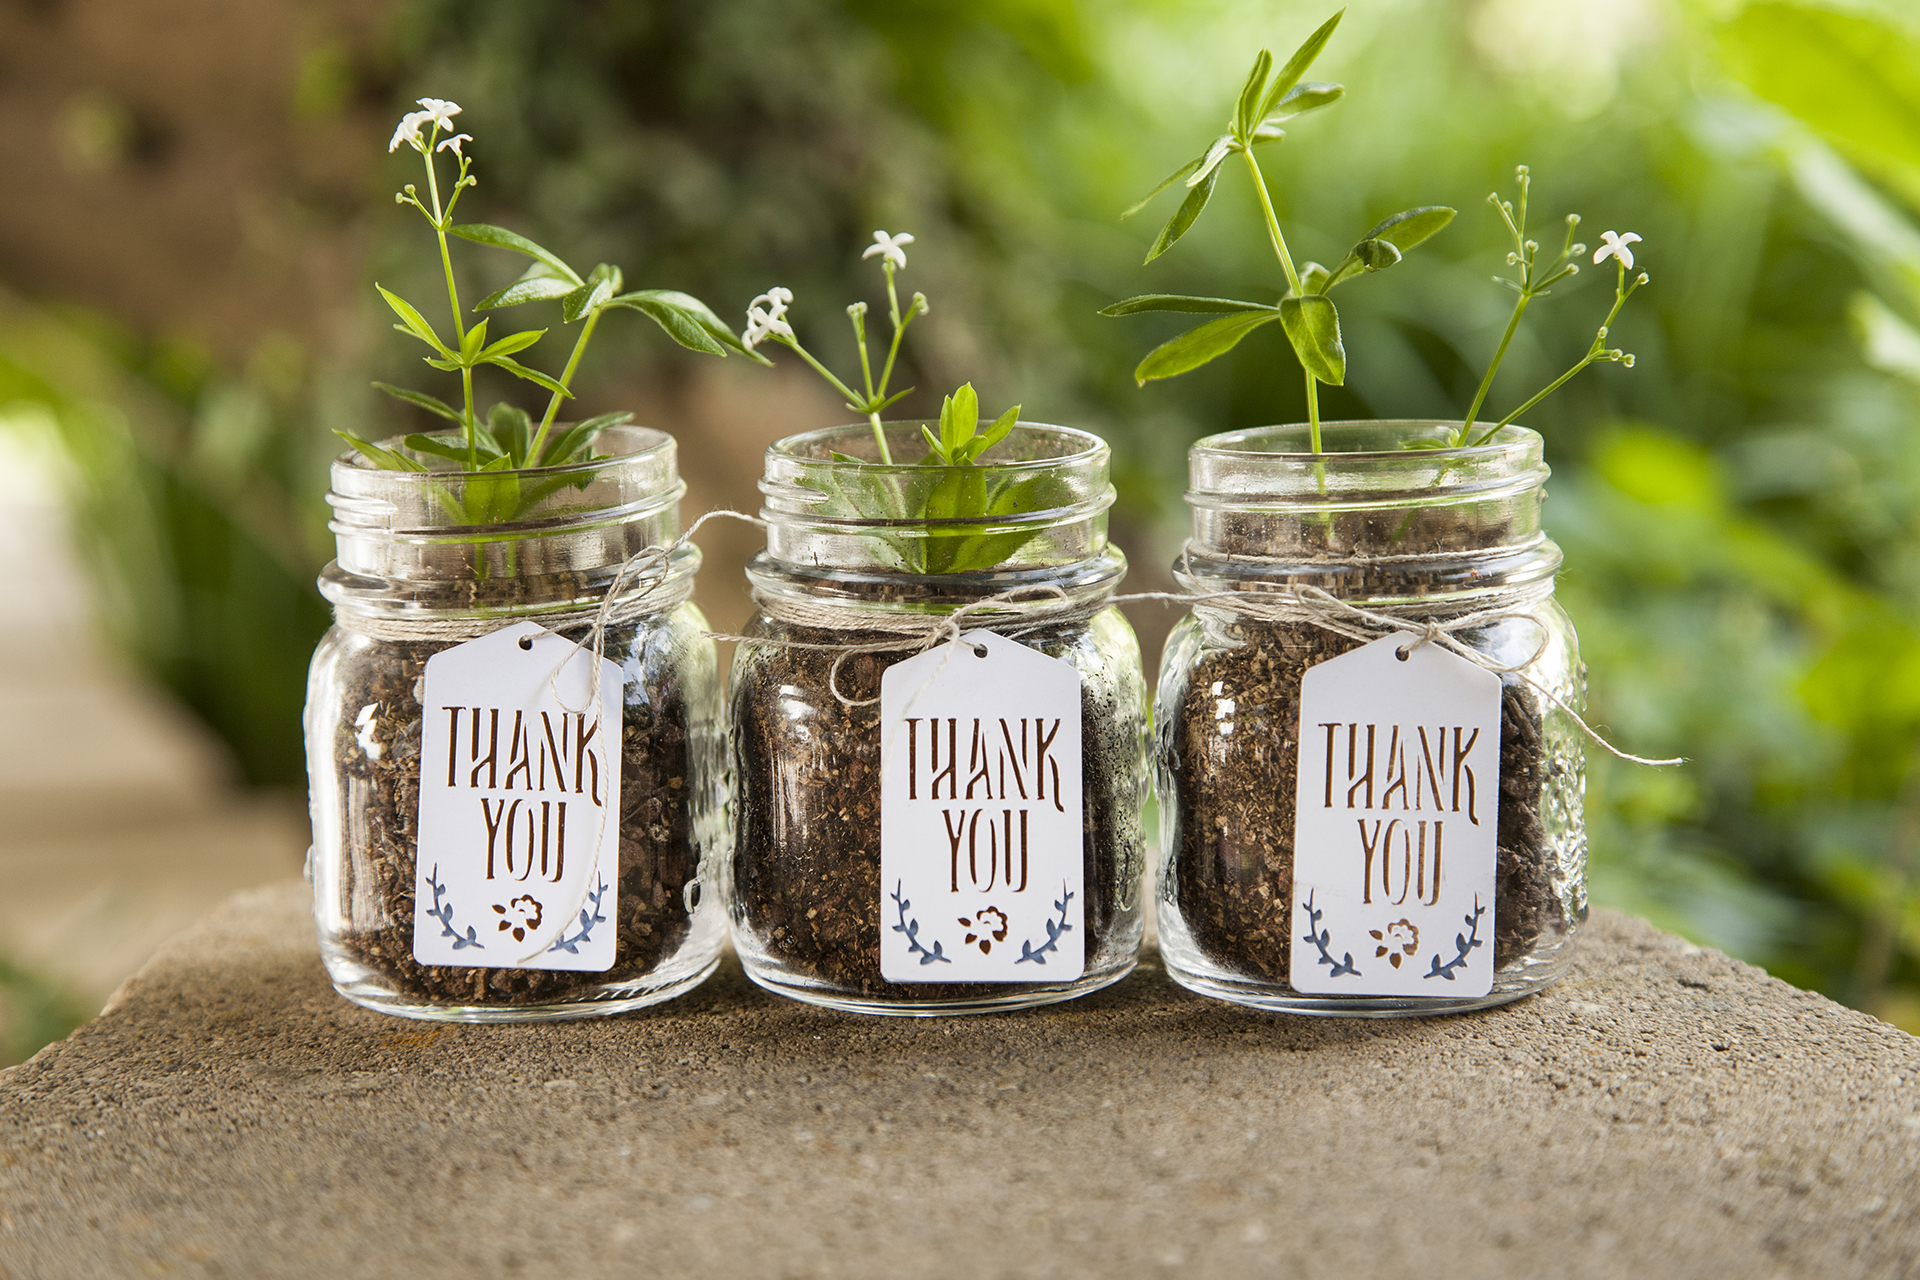 Trois petits pots en verre remplis de terre et d'une plante avec une étiquette indiquant « merci » en anglais sur le devant de chaque pot